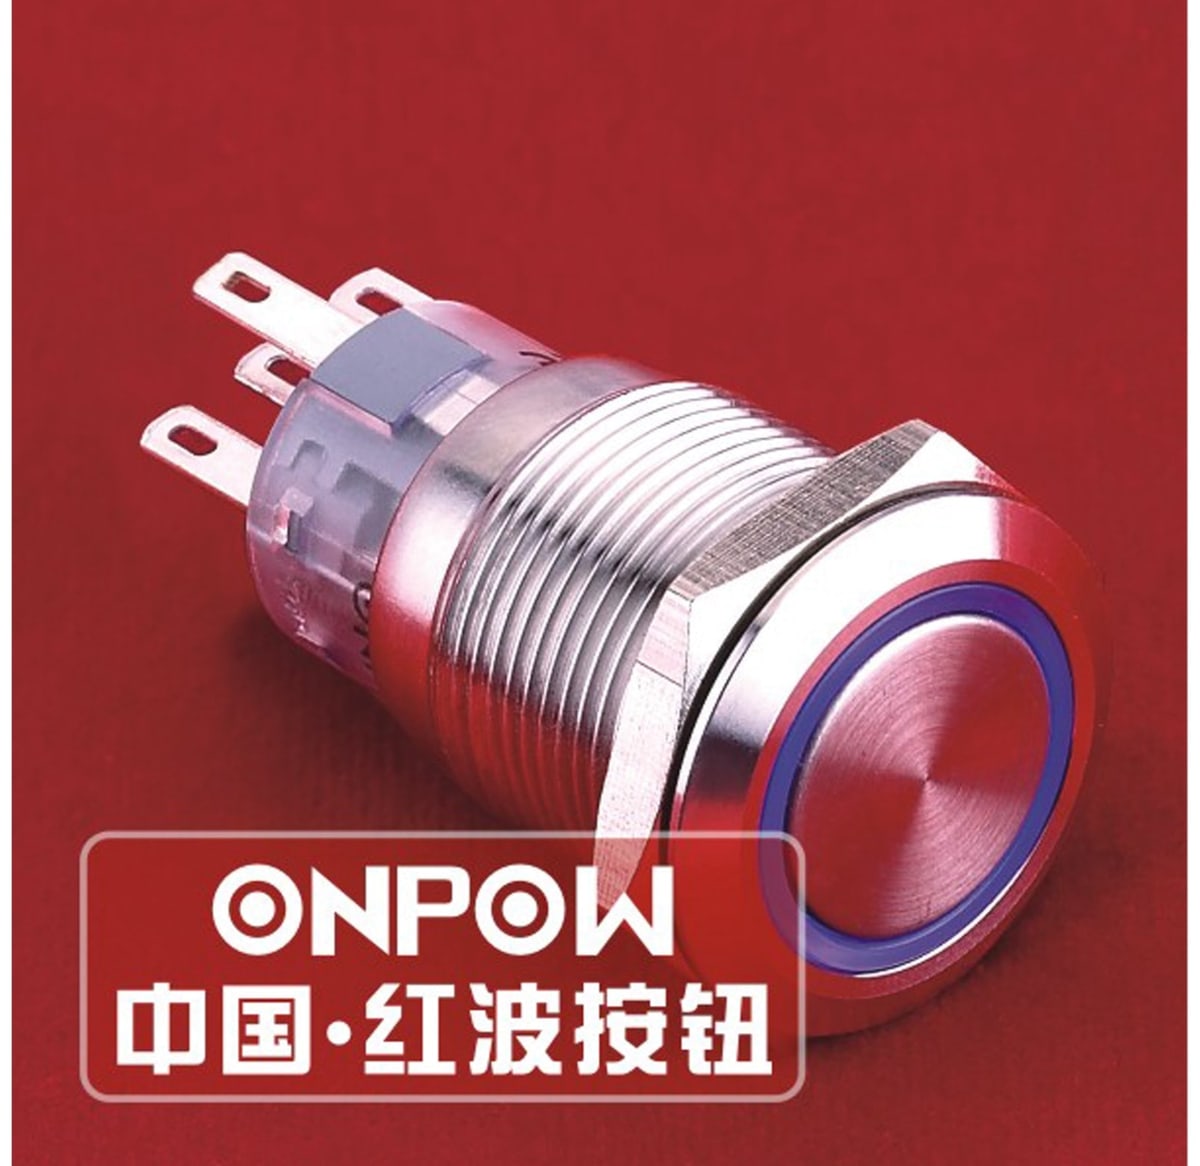 ONPOW Schalter, 24 V/DC, 1x Off/(On), Beleuchtung weiß, Lötanschluss, flach rund, Edelstahl, 19 mm von ONPOW